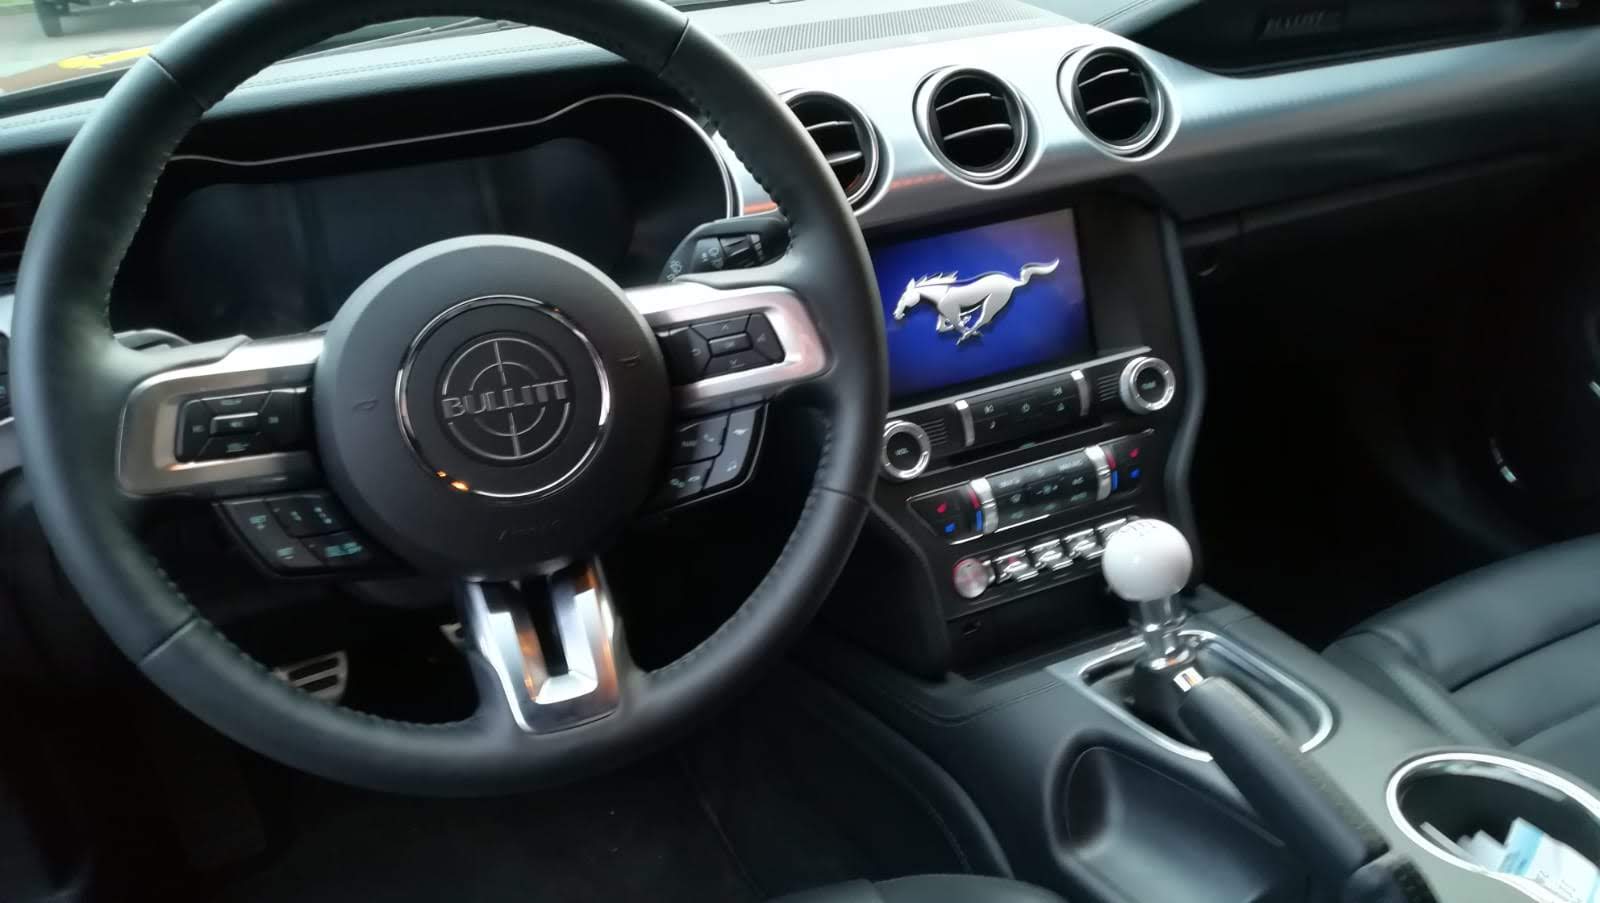 2019 Ford Mustang Bullitt Steering Wheel